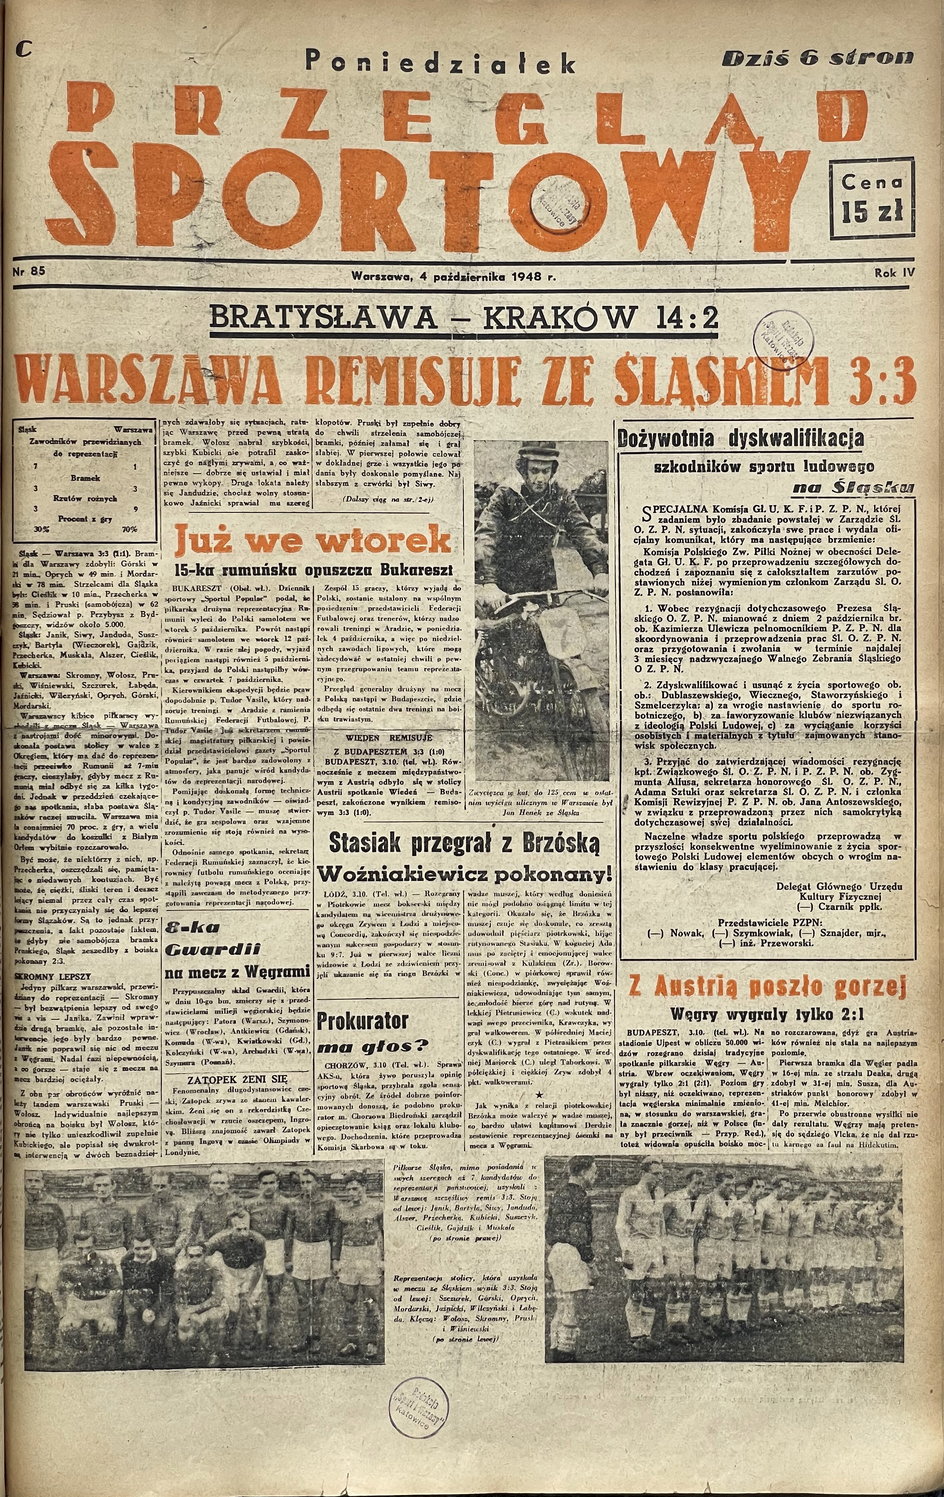 Okładka "Przeglądu Sportowego" z 4 października 1948 r.